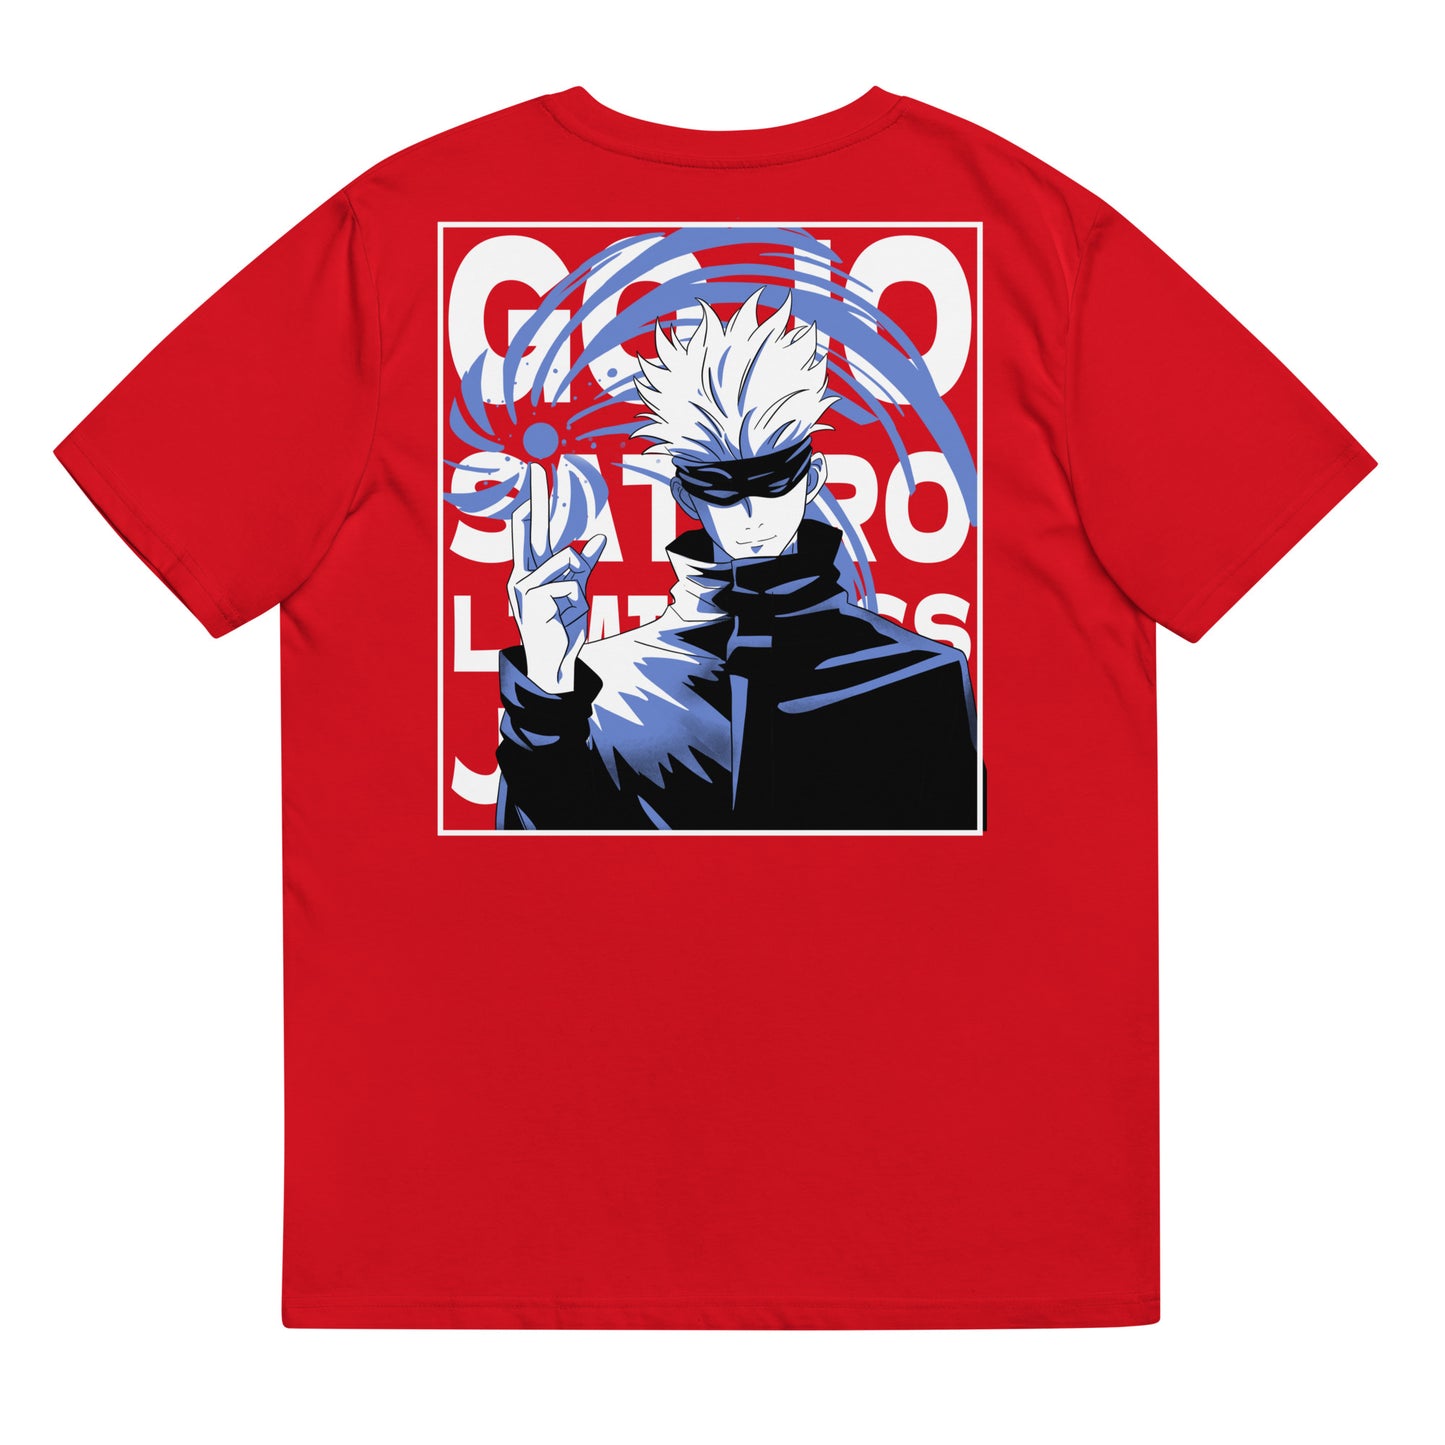 Gojo Limitless T-Shirt, Jujutsu Kaisen Anime